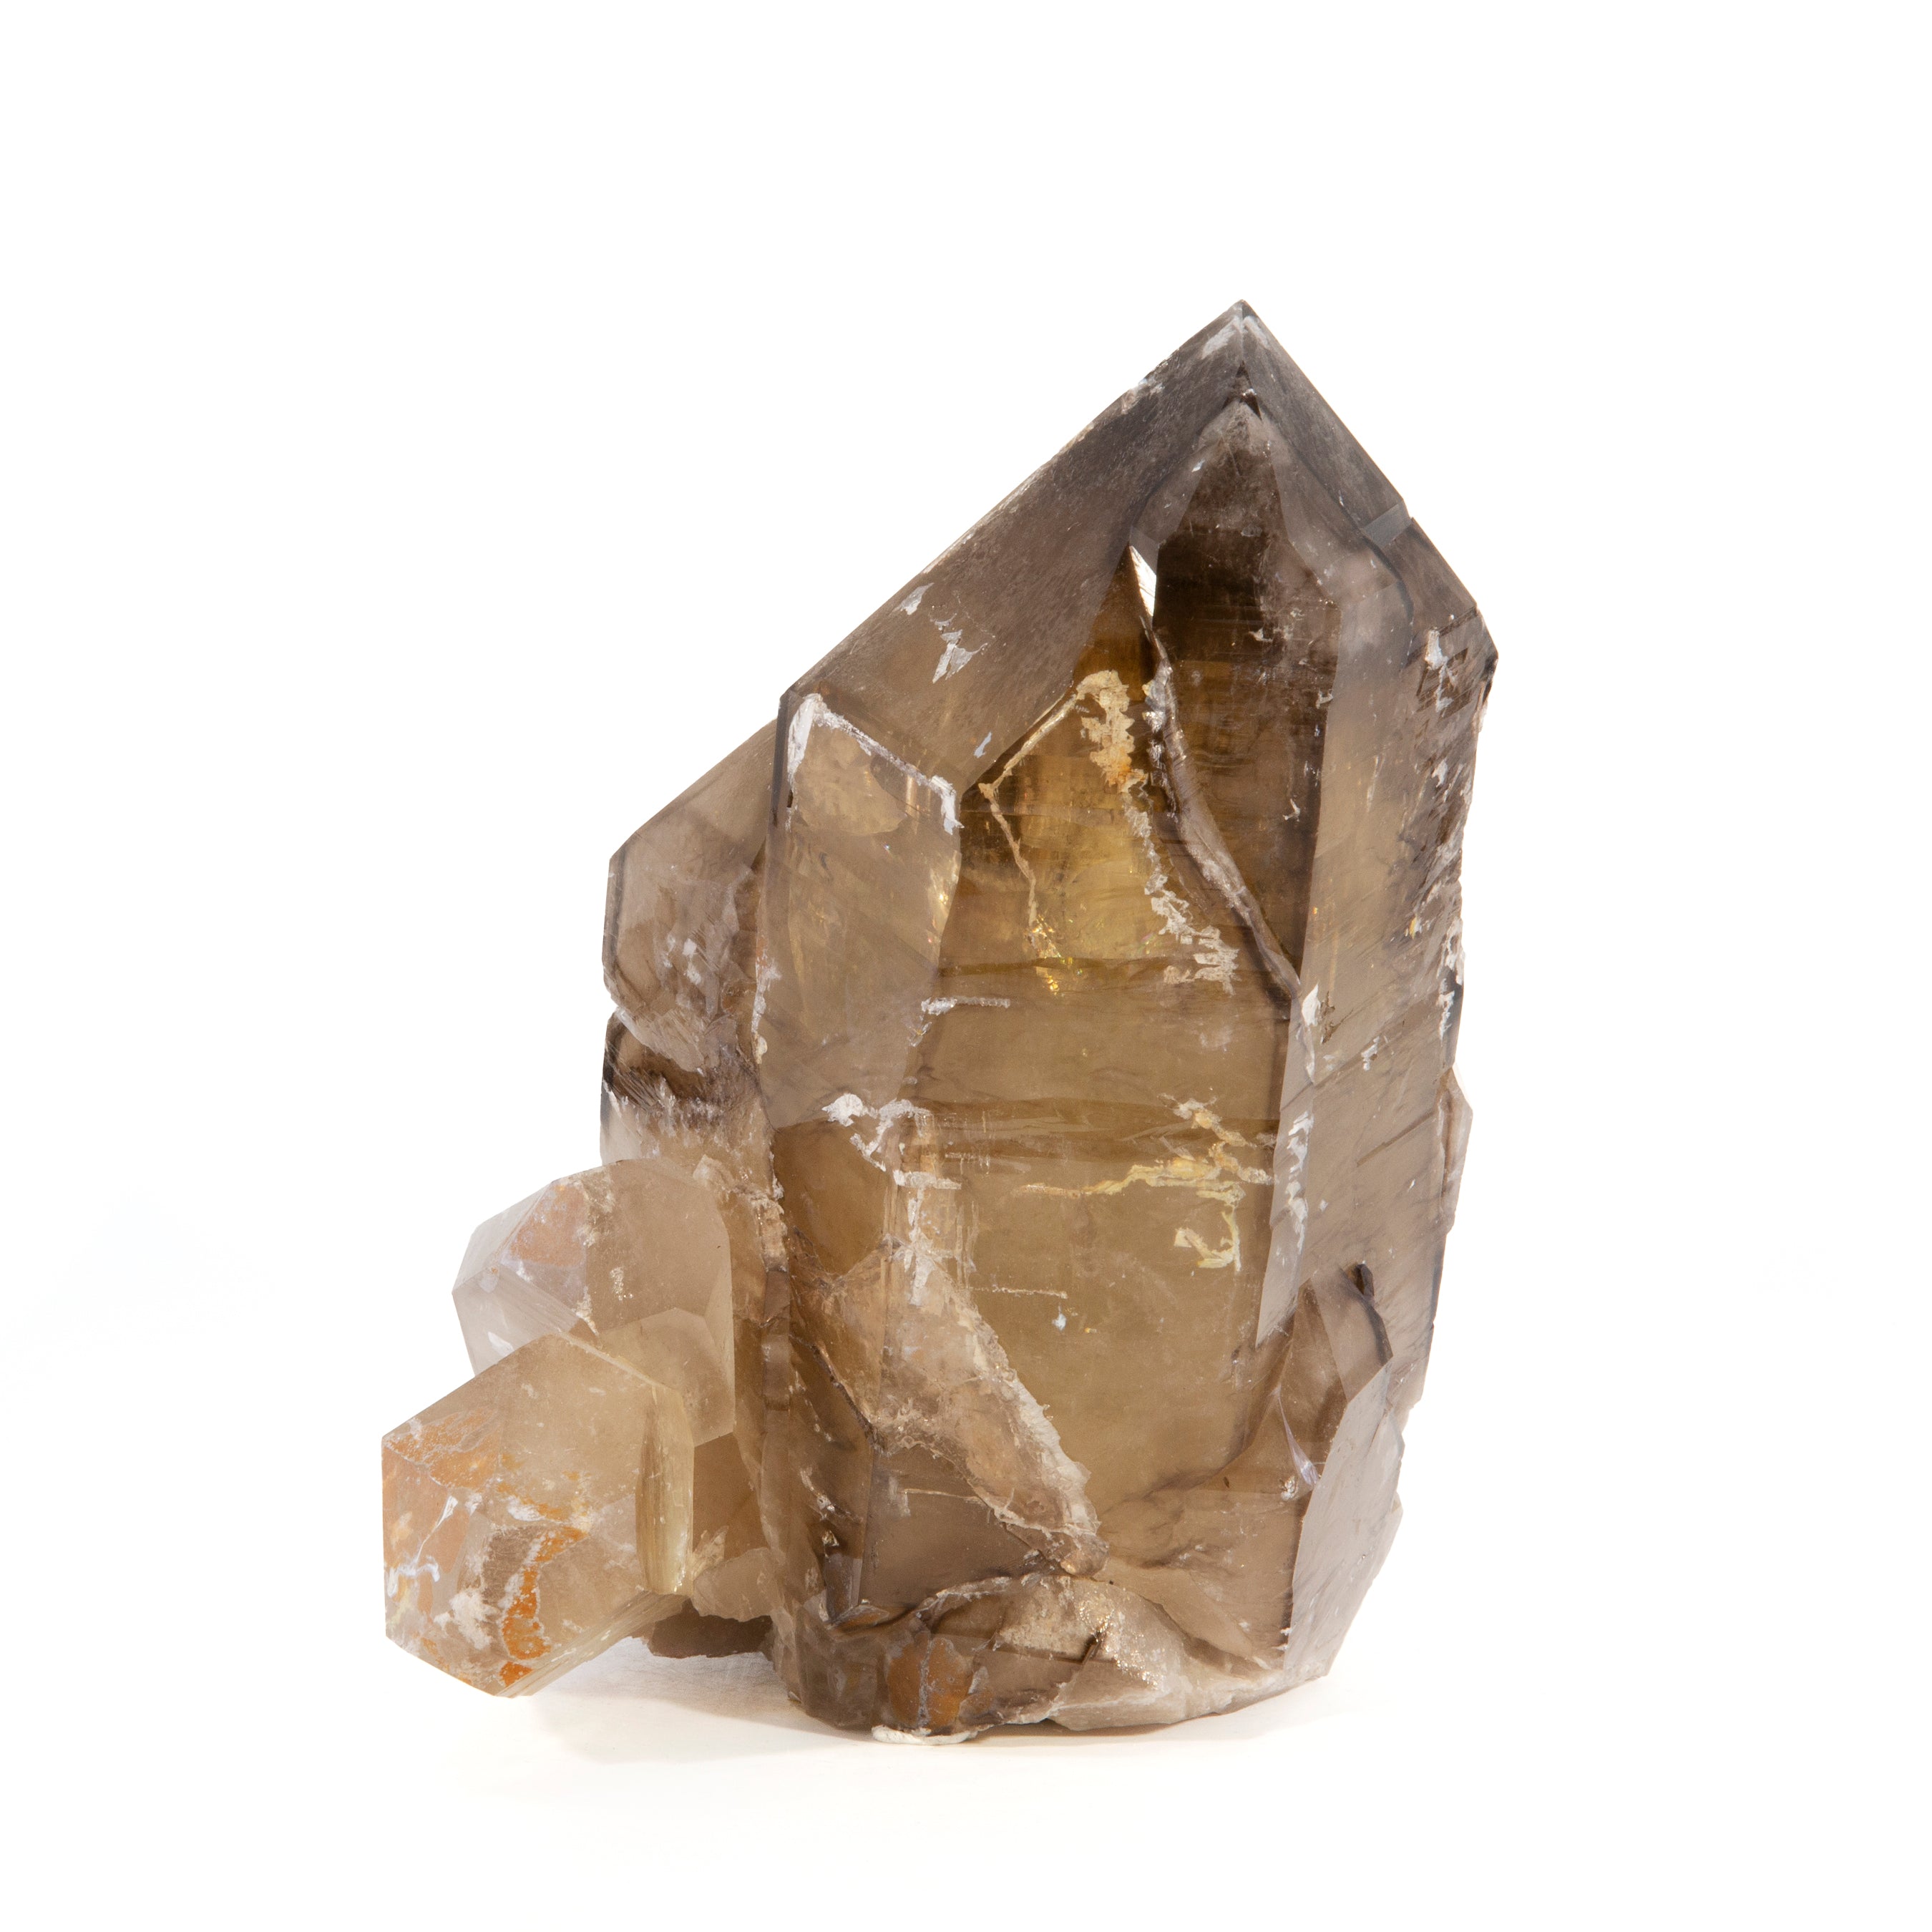 Smoky Quartz 7.75lb 7.5 inch Natural Crystal - Brazil - TX-033 - Crystalarium